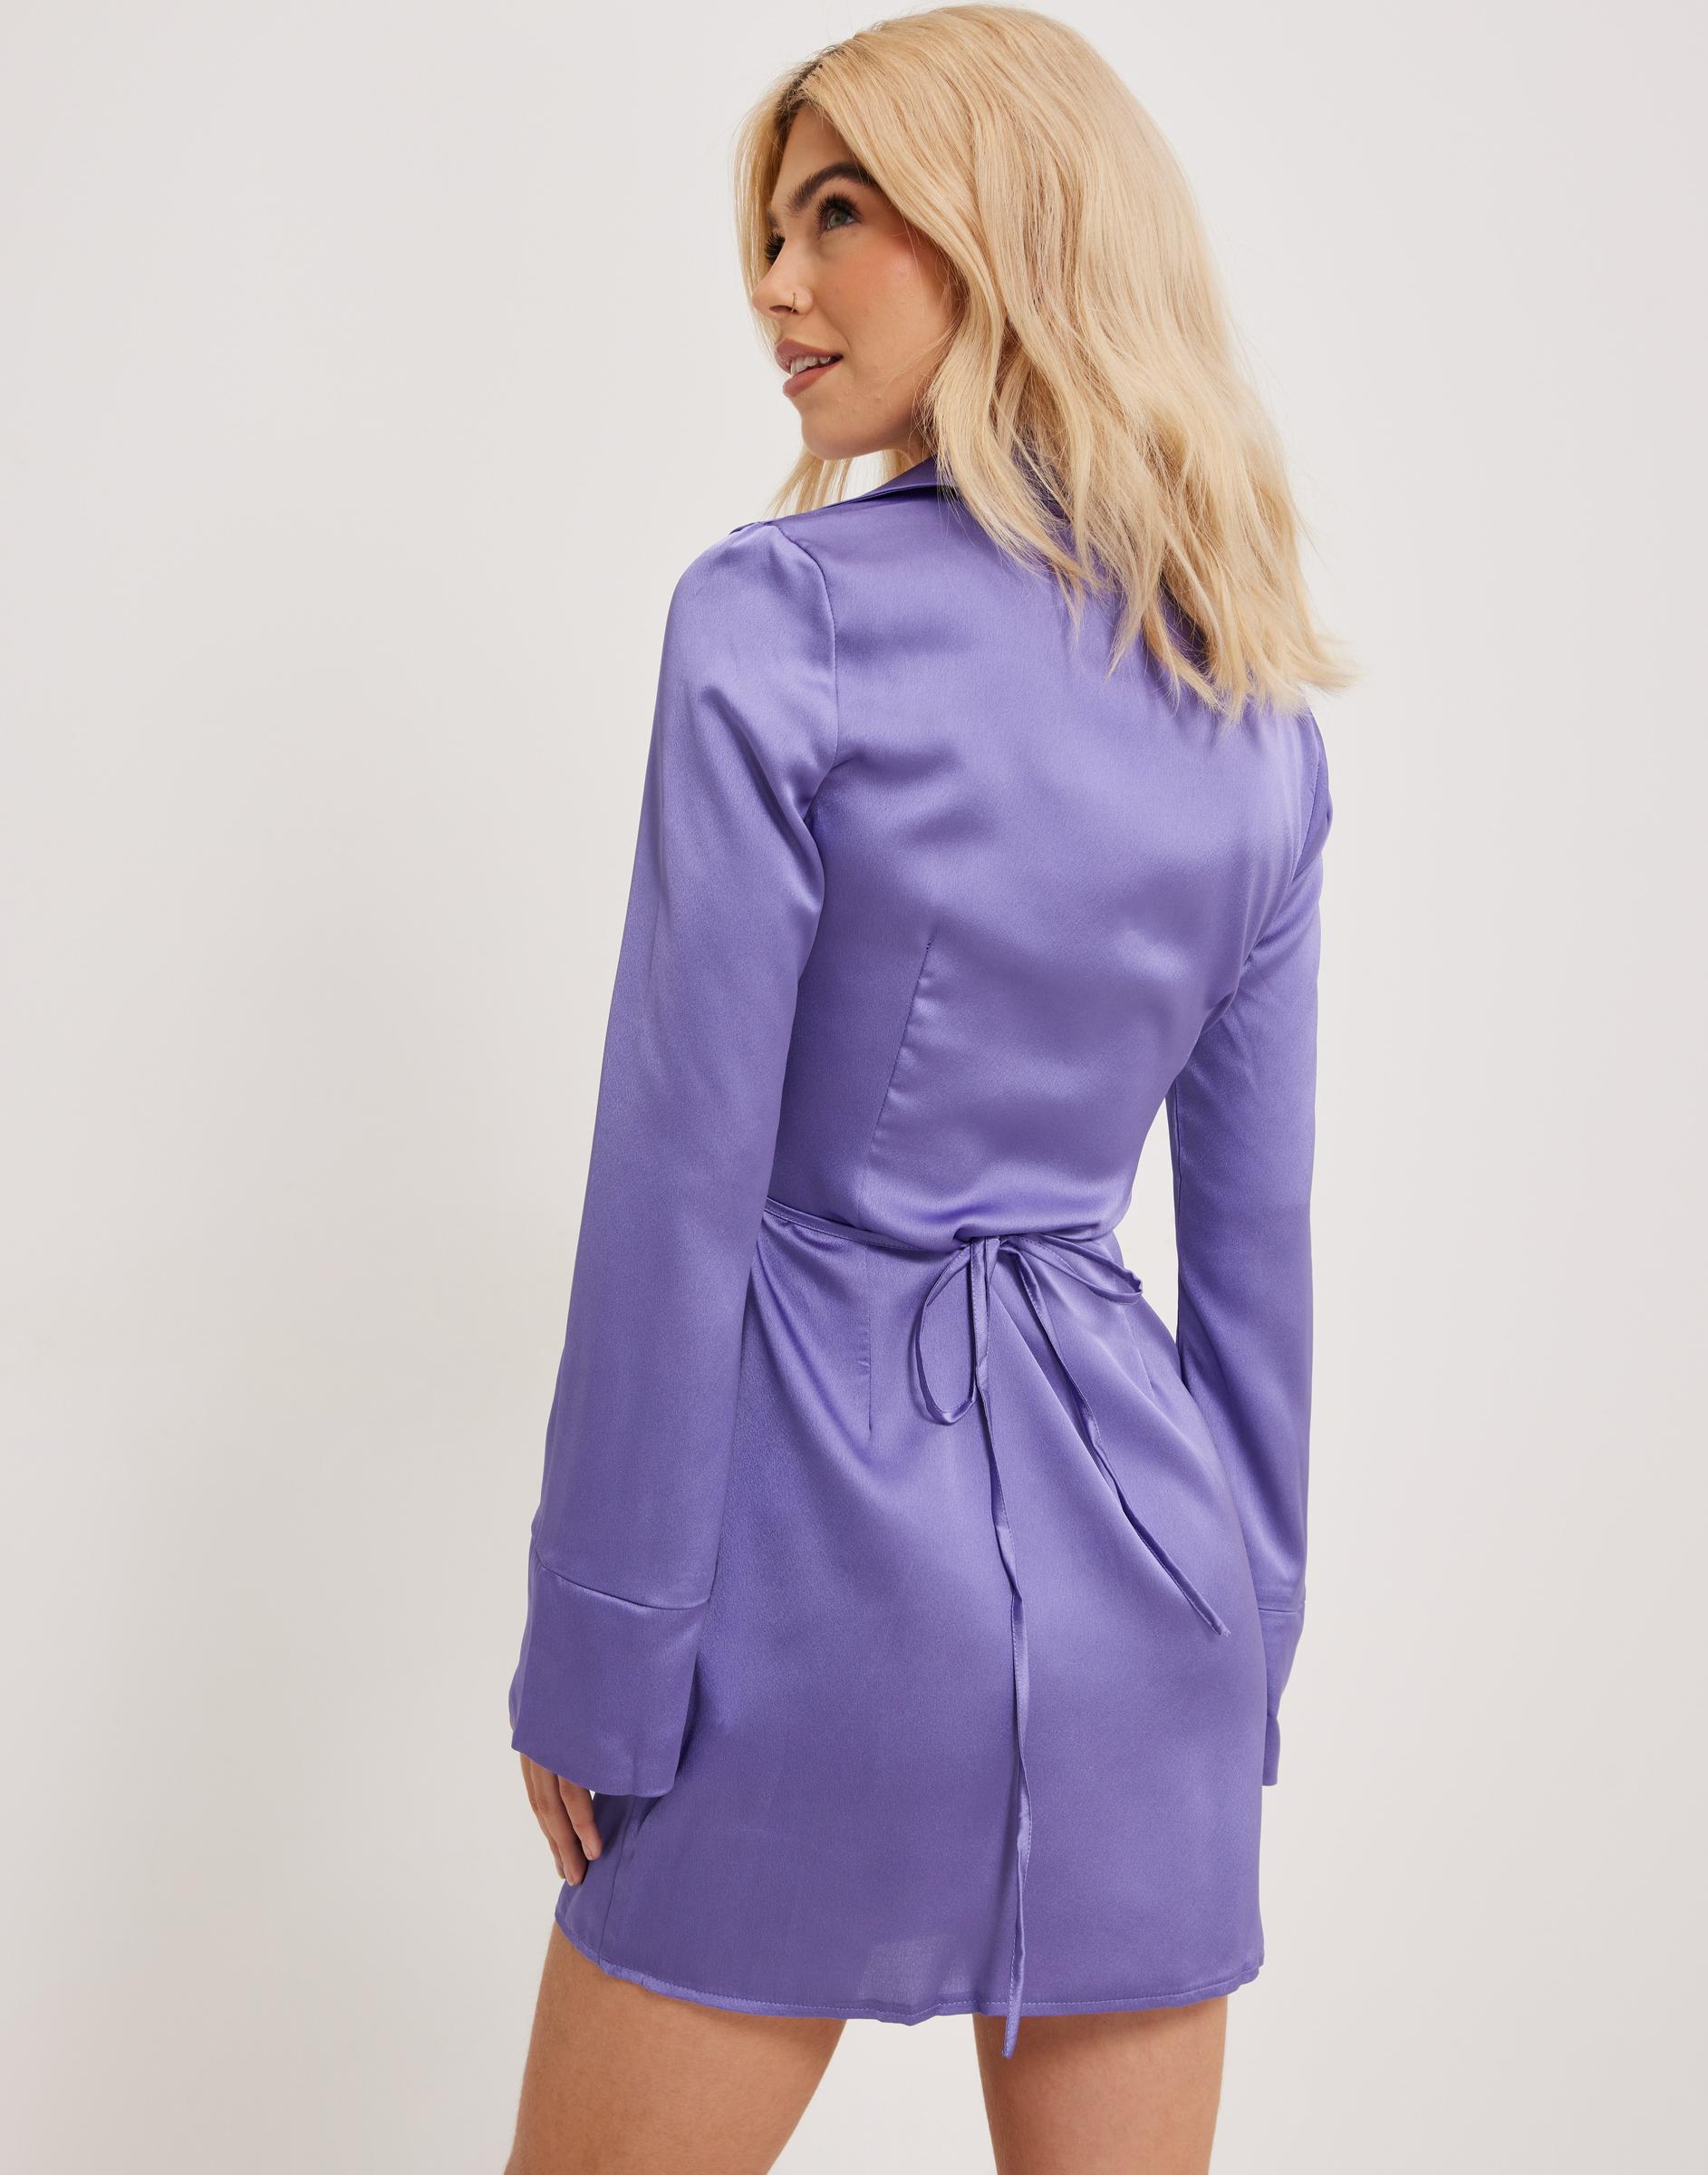 satynowa fioletowa mini sukienka wiązanie